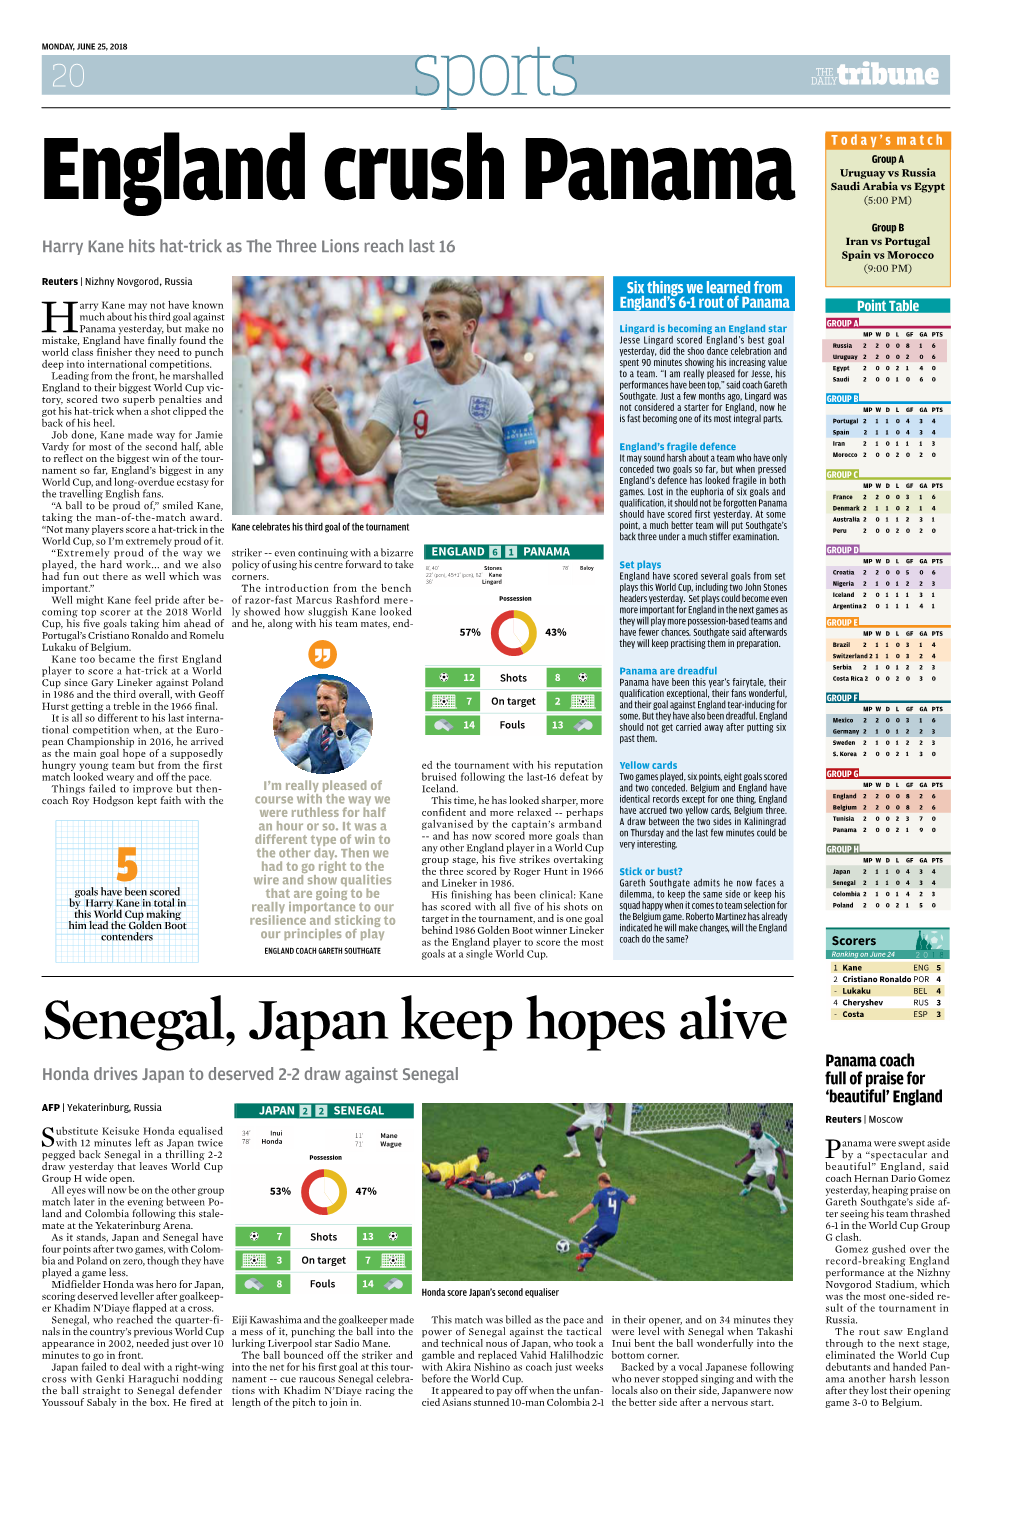 Senegal, Japan Keep Hopes Alive - Dzyuba RUS 2 - E